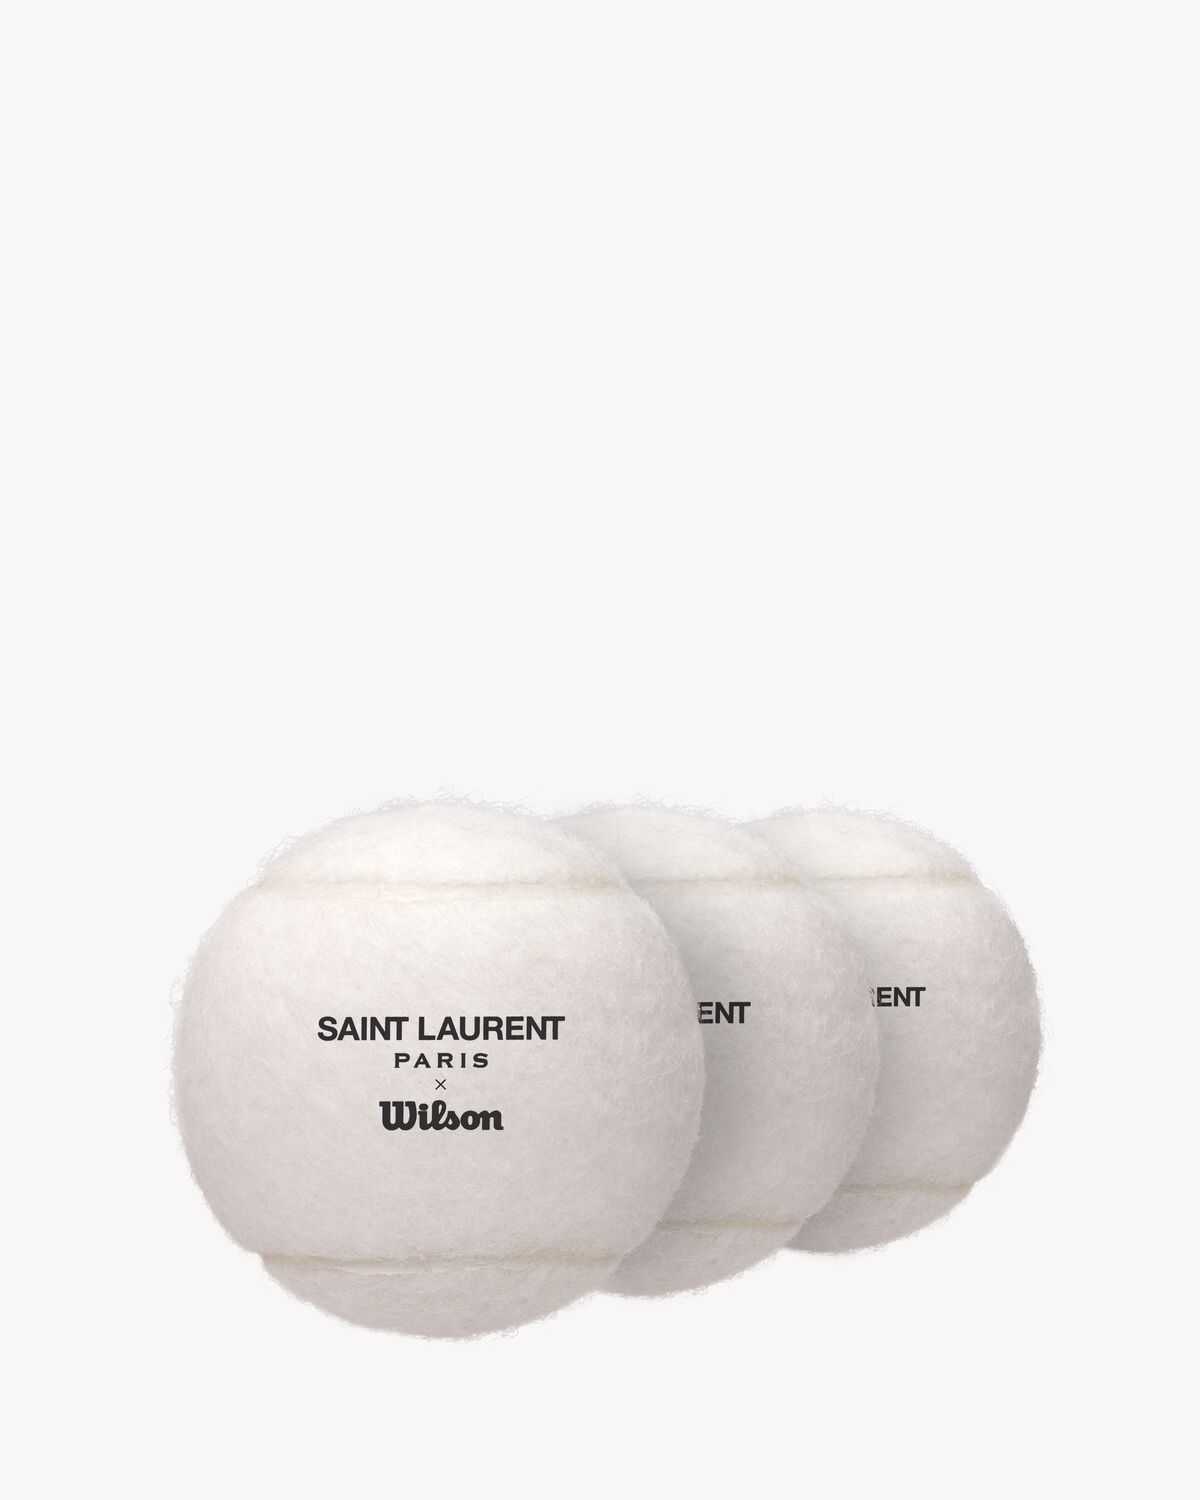 Wilson tennis balls